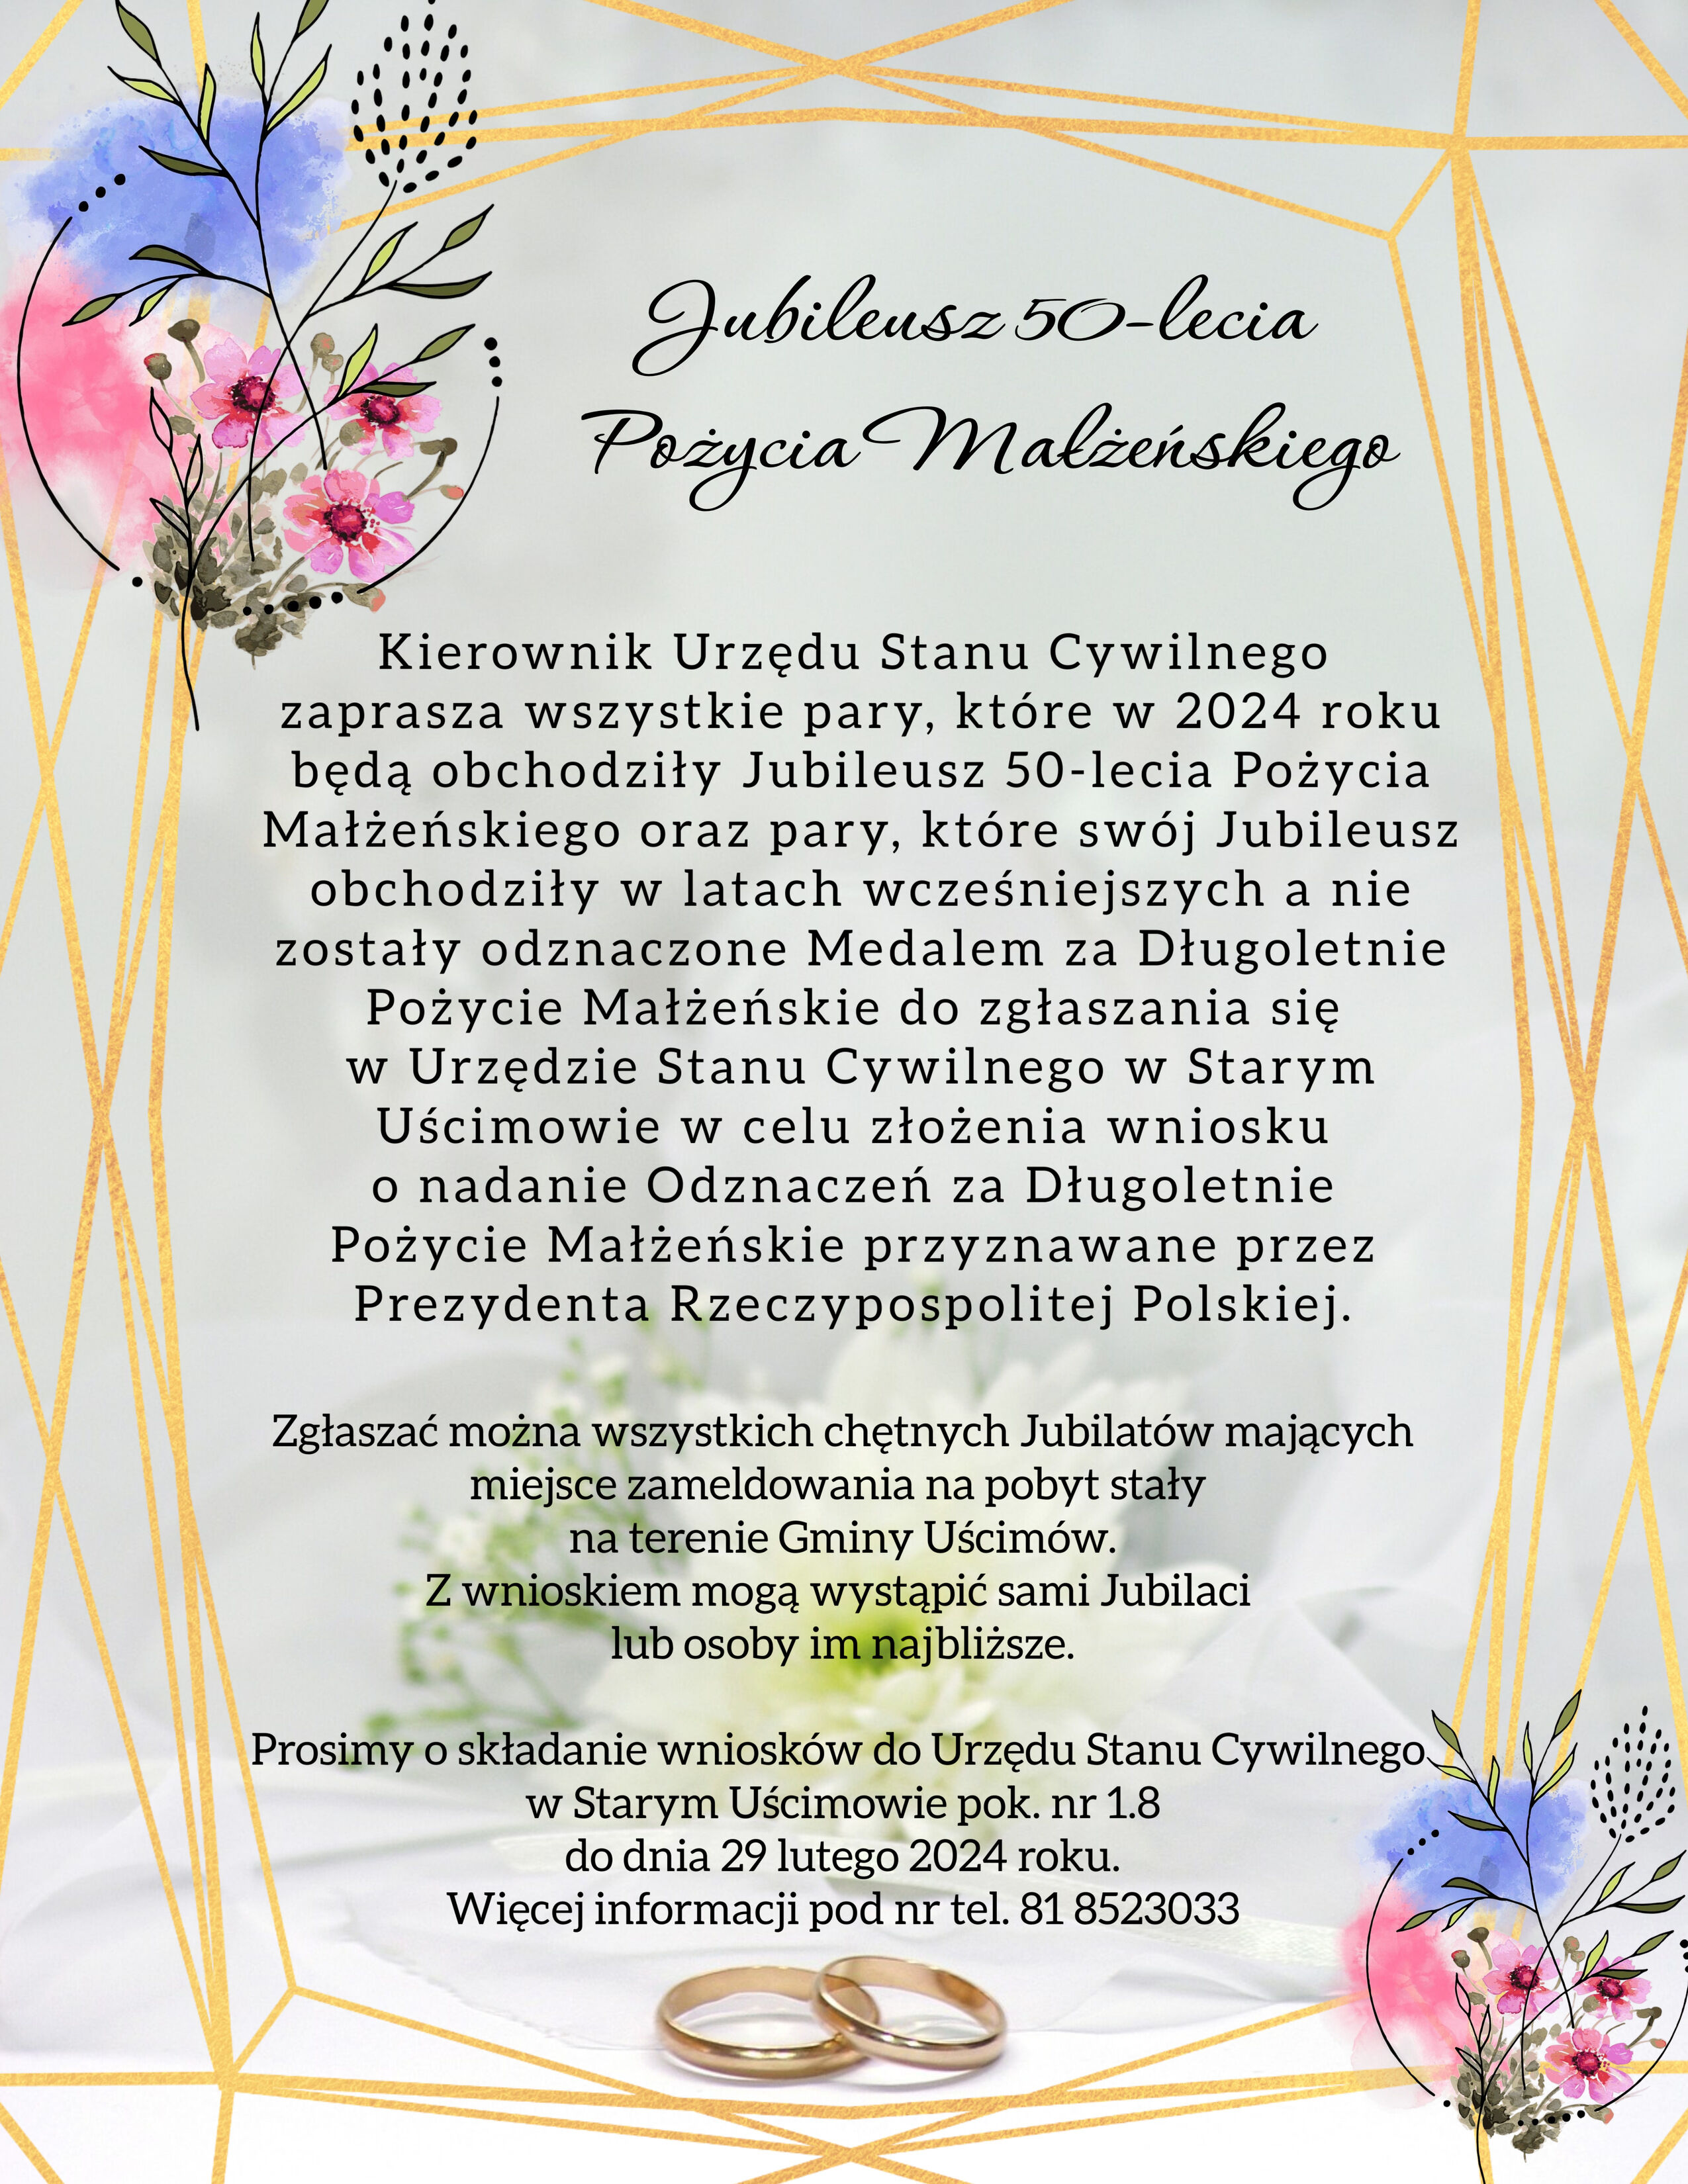 Zdjęcie plakatu informacyjnego o wydarzeniu pt. "W ogródku Malusieńkiego", z grafiką kwiatową i motylami, zawierającym szczegóły dotyczące uroczystości jubileuszowej i informacje kontaktowe.